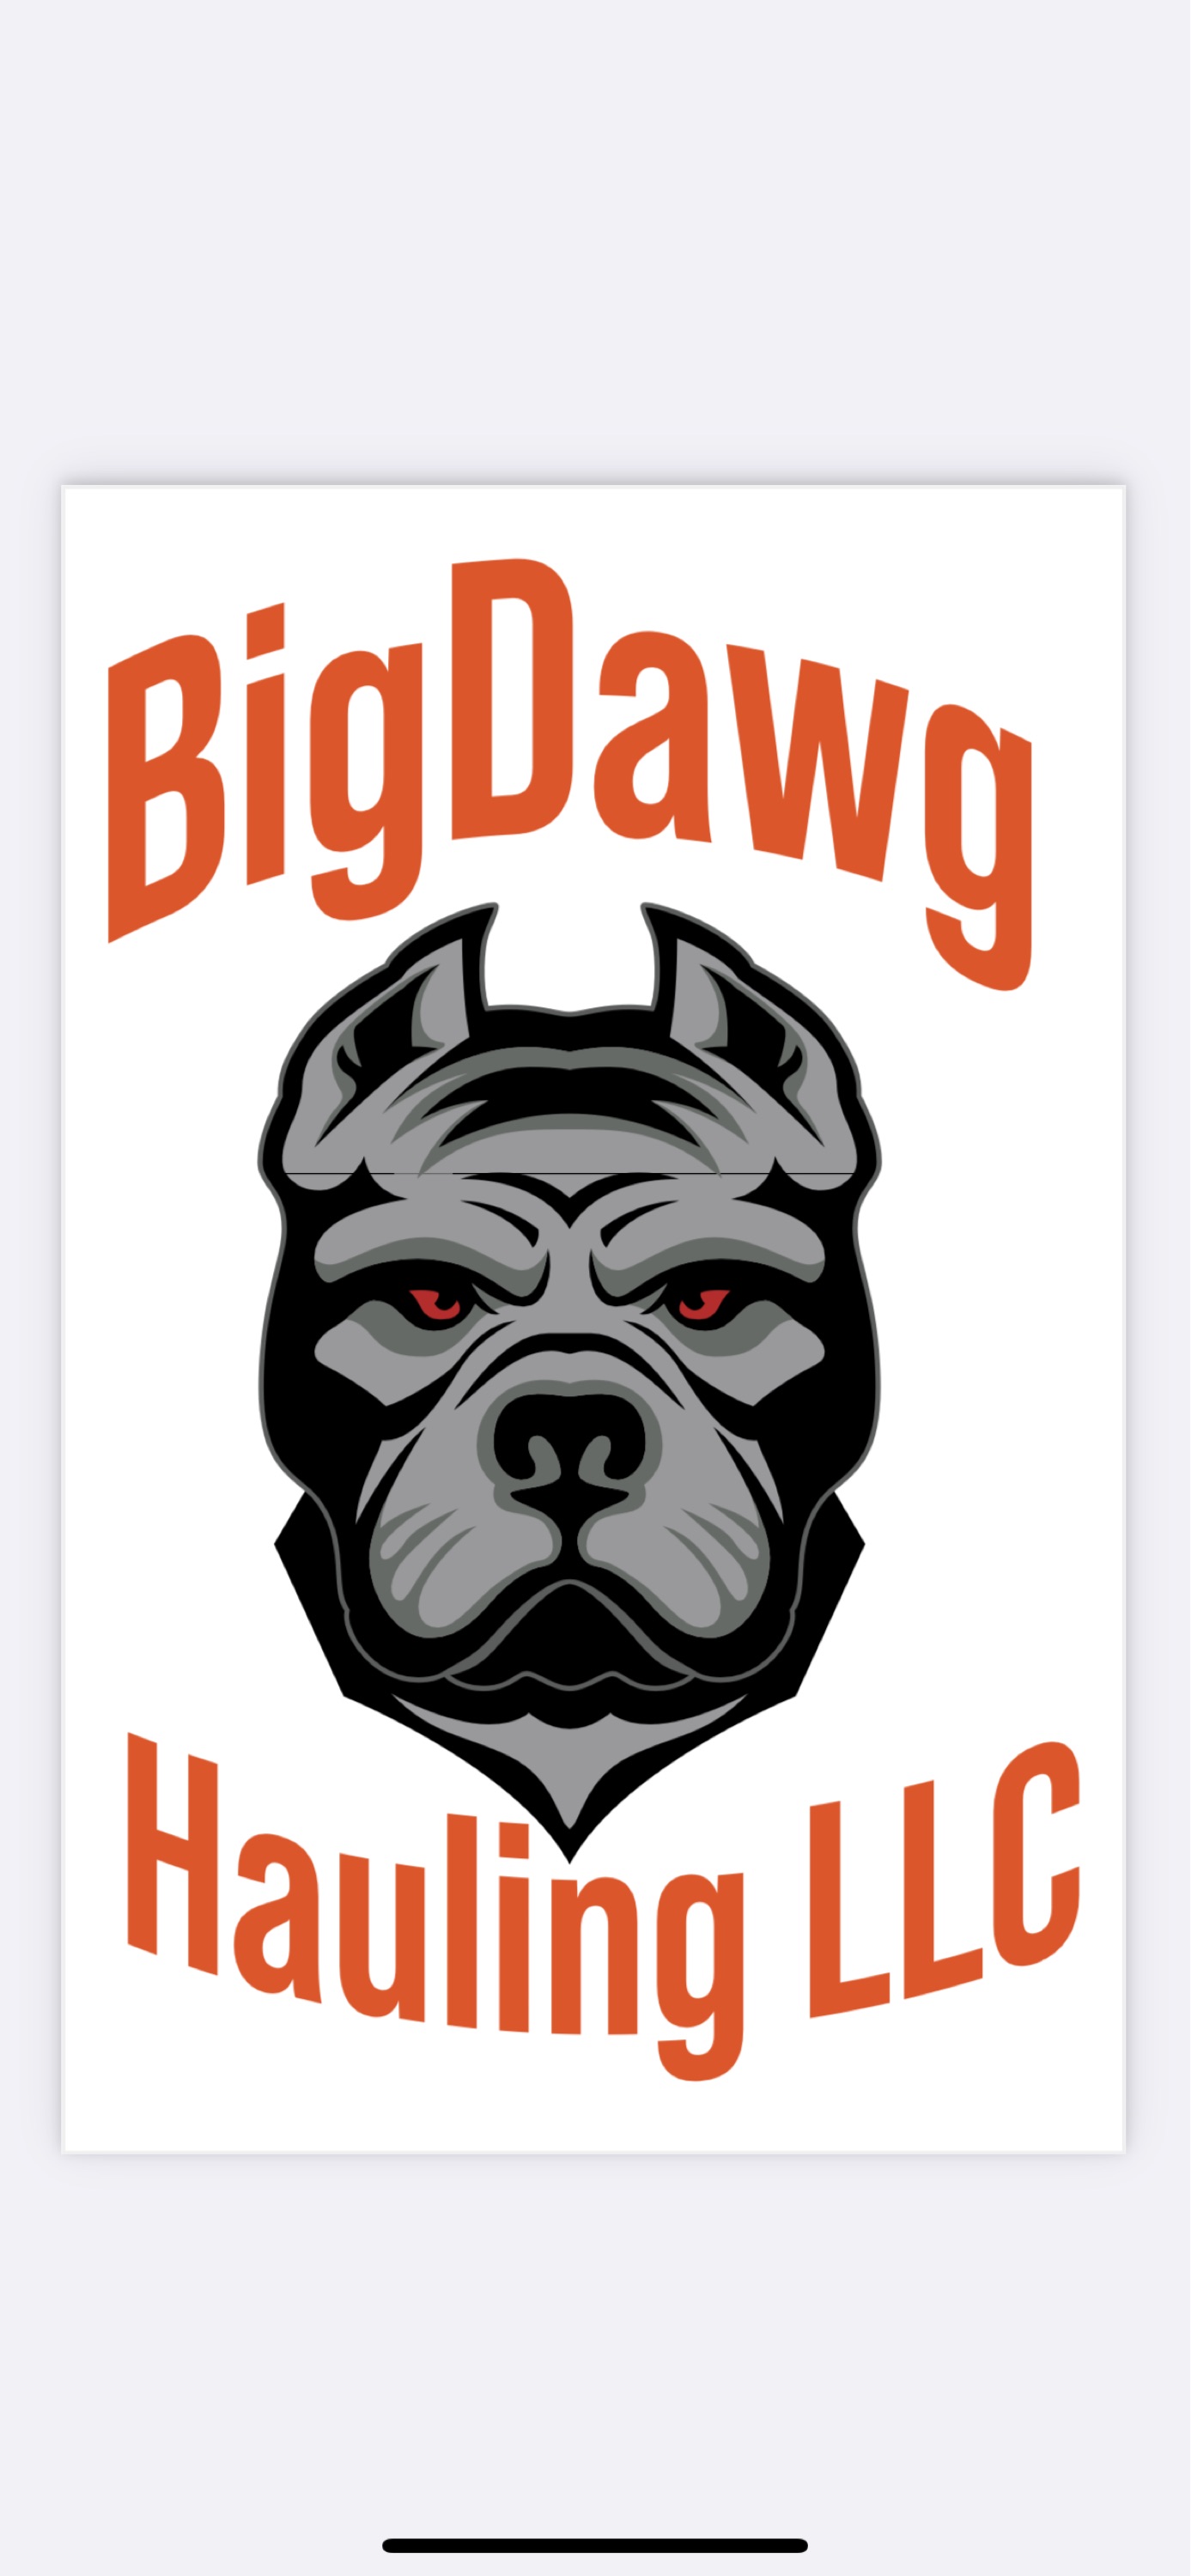 BigDawg Hauling, LLC Logo